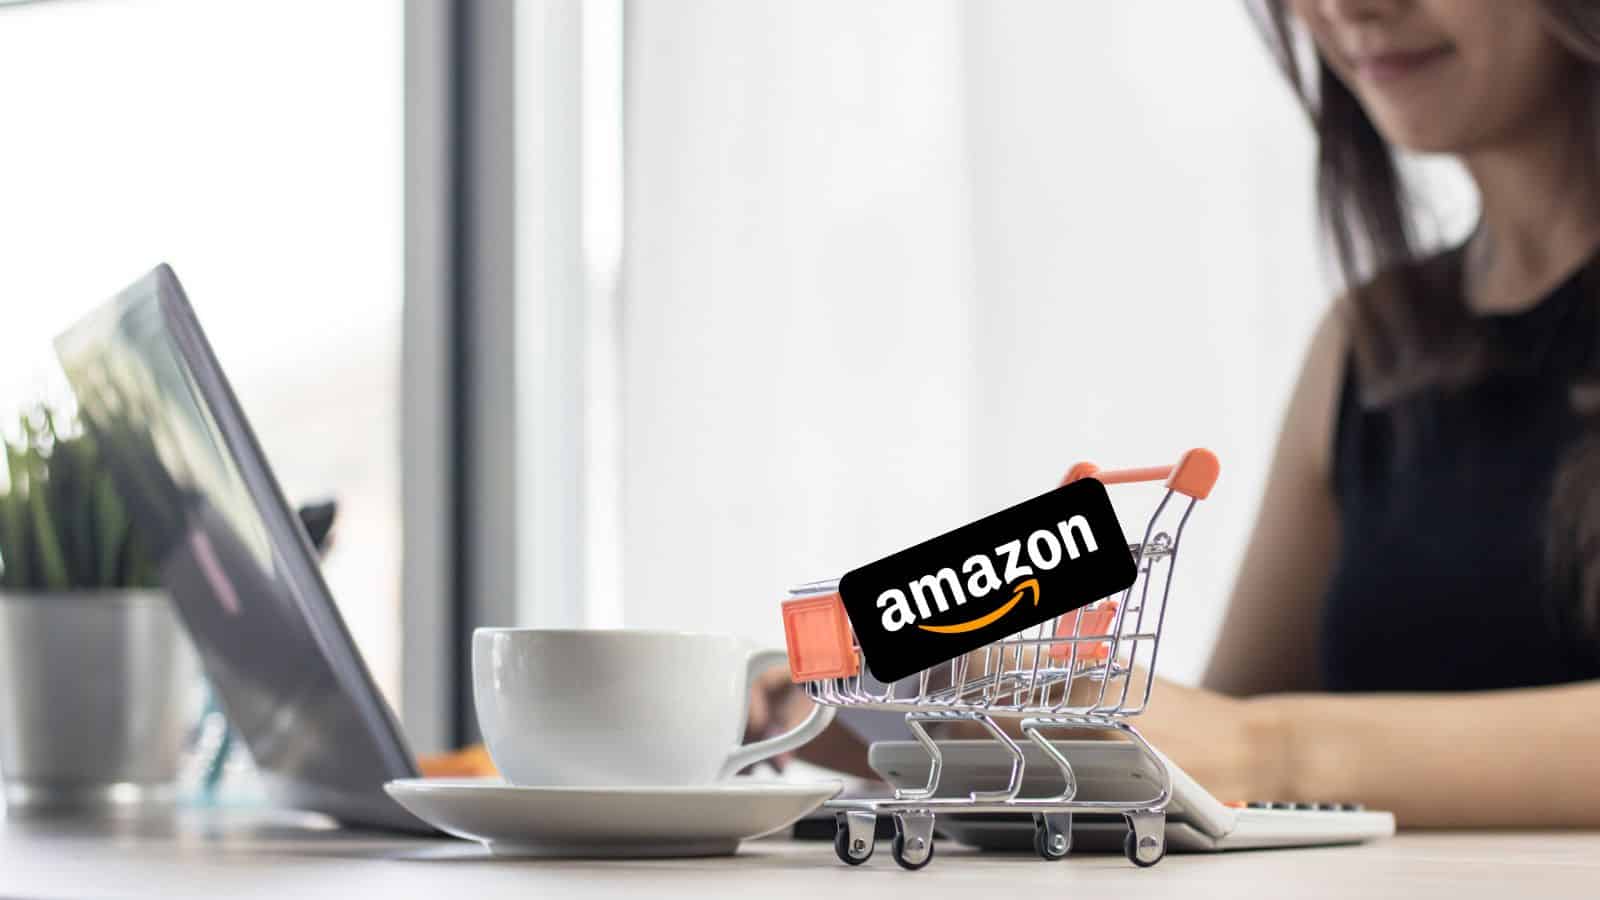 Amazon IMPAZZITA: ecco le offerte TECH all'80% di sconto